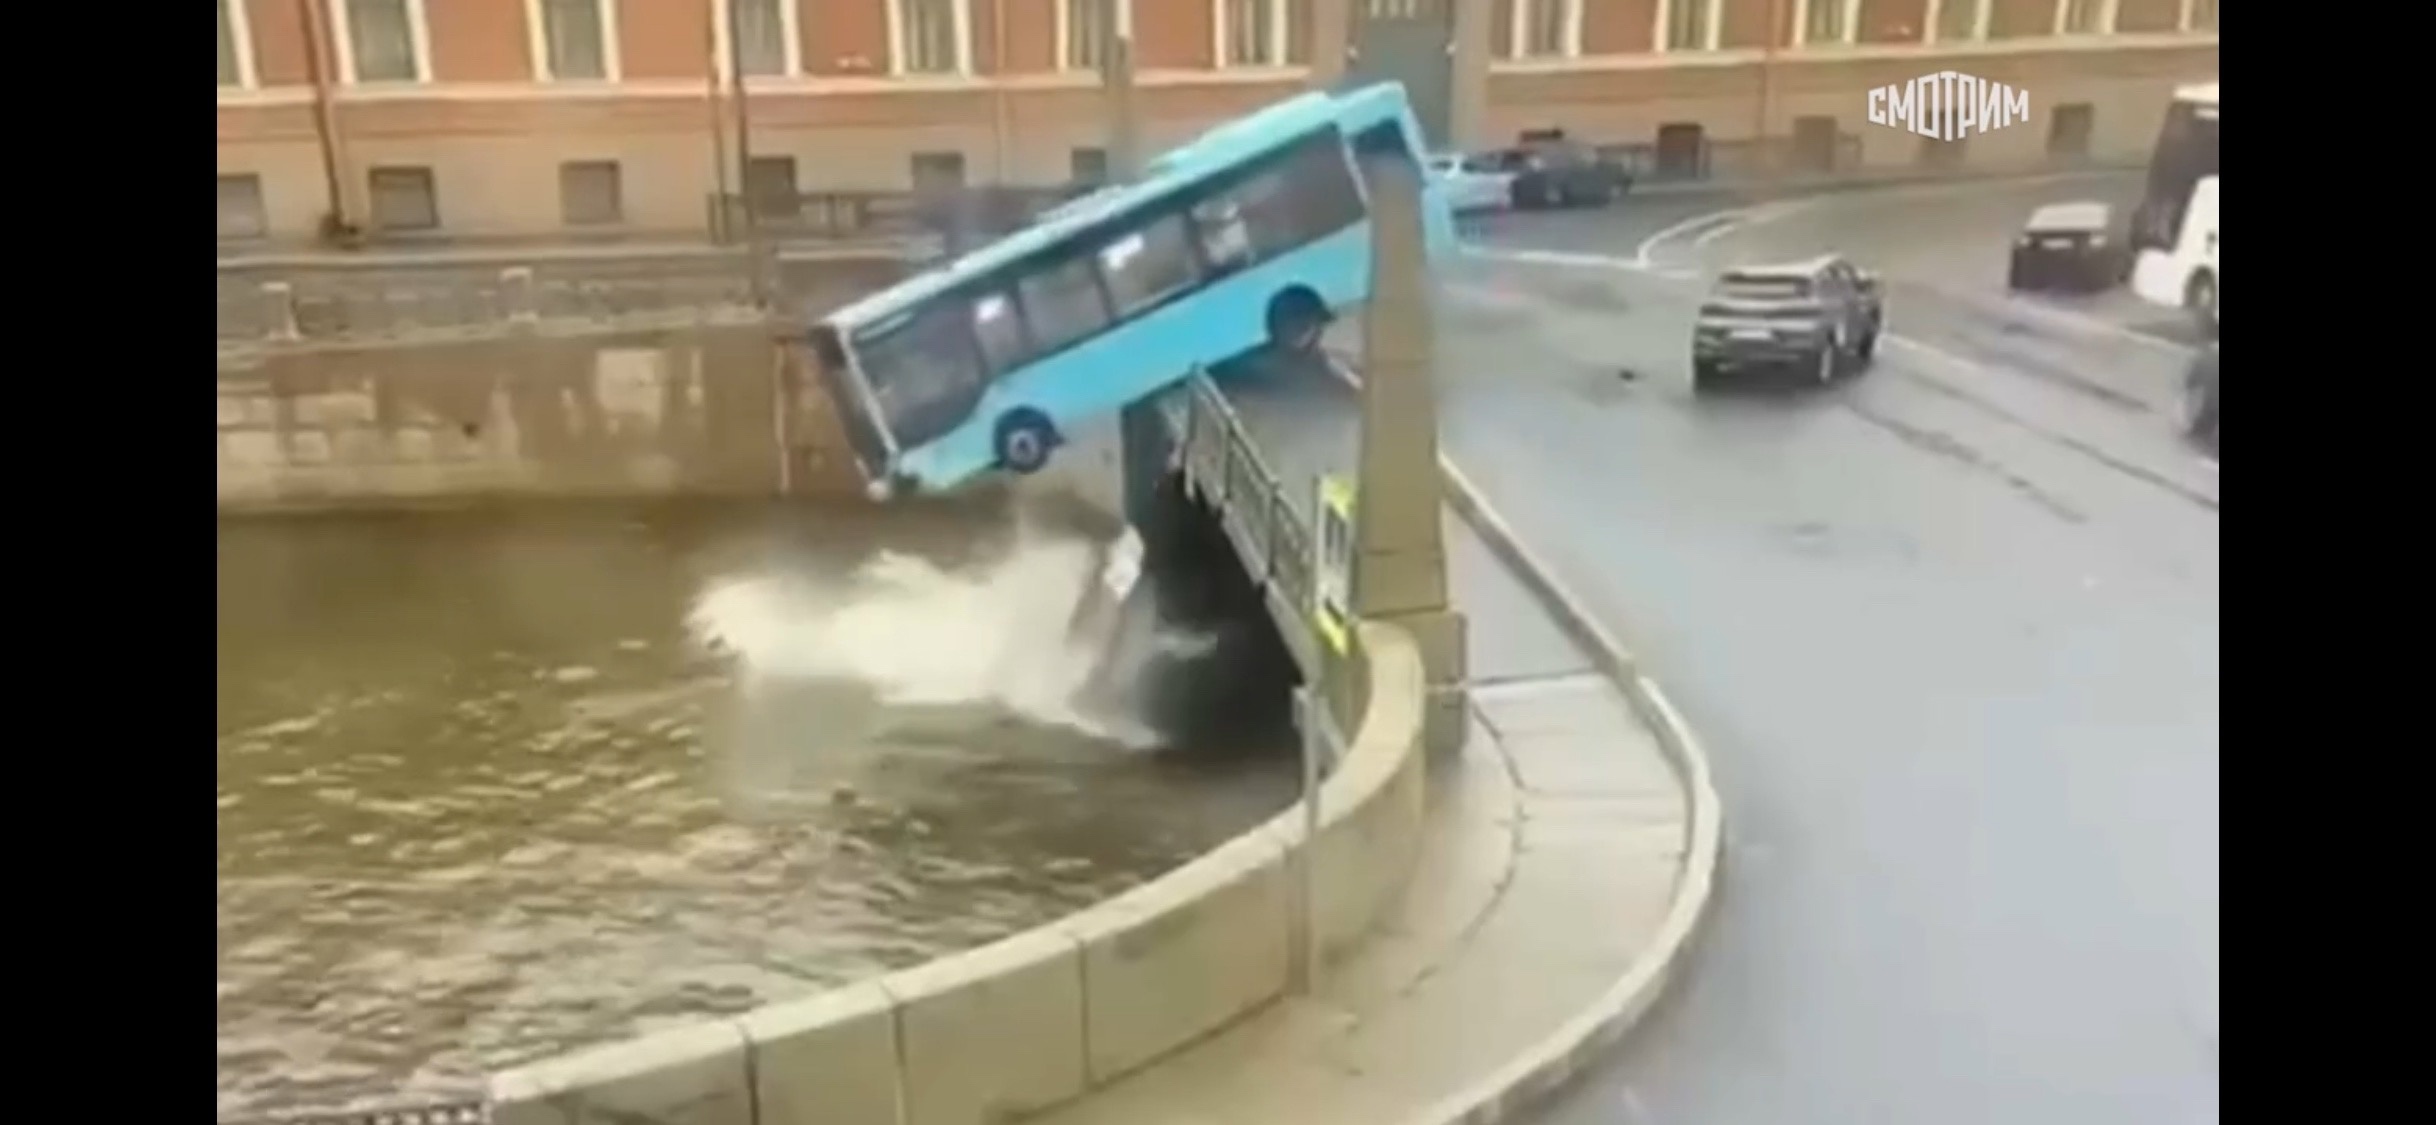 Трагедия в Санкт-Петербурге: автобус выехал за ограждения и упал с моста, есть погибшие